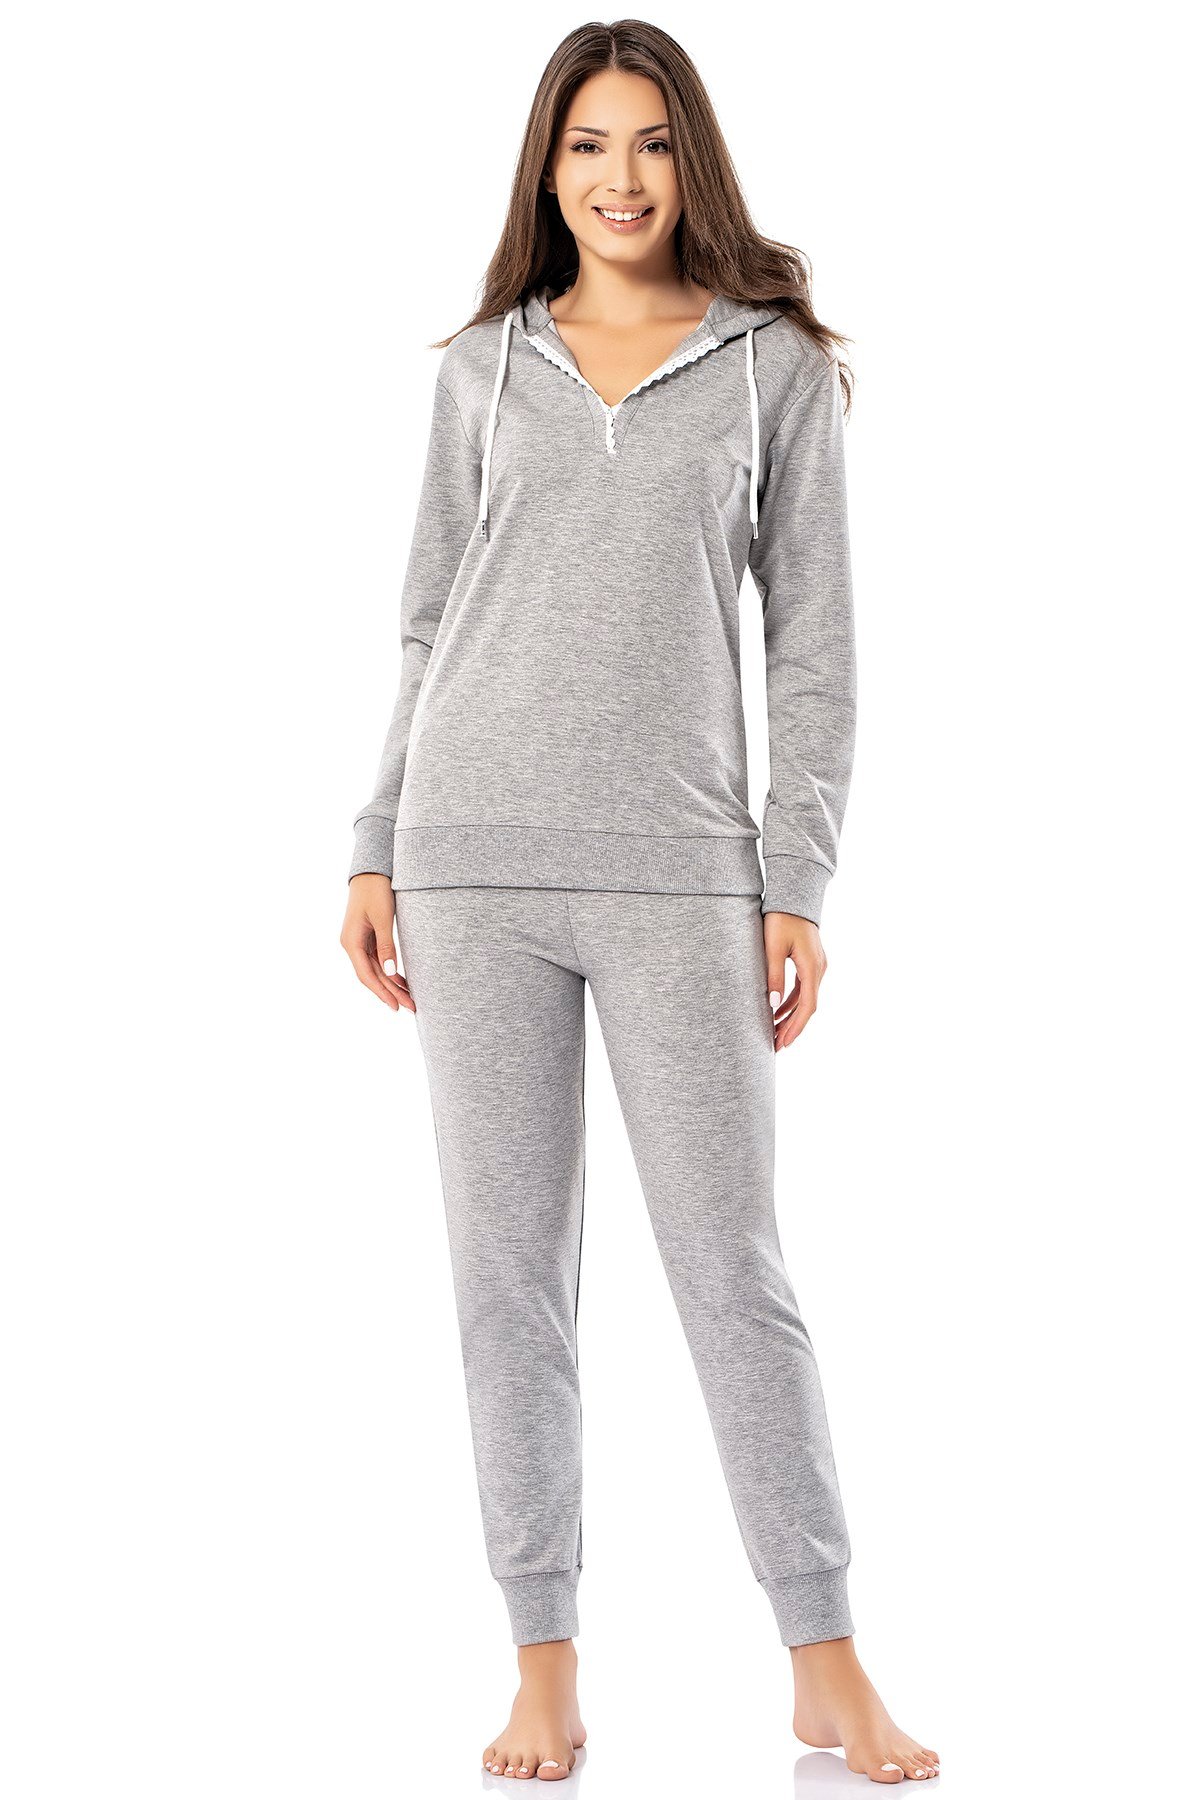 Erdem Kadın Kışlık Pijama Takımı: Erdem İç Giyim